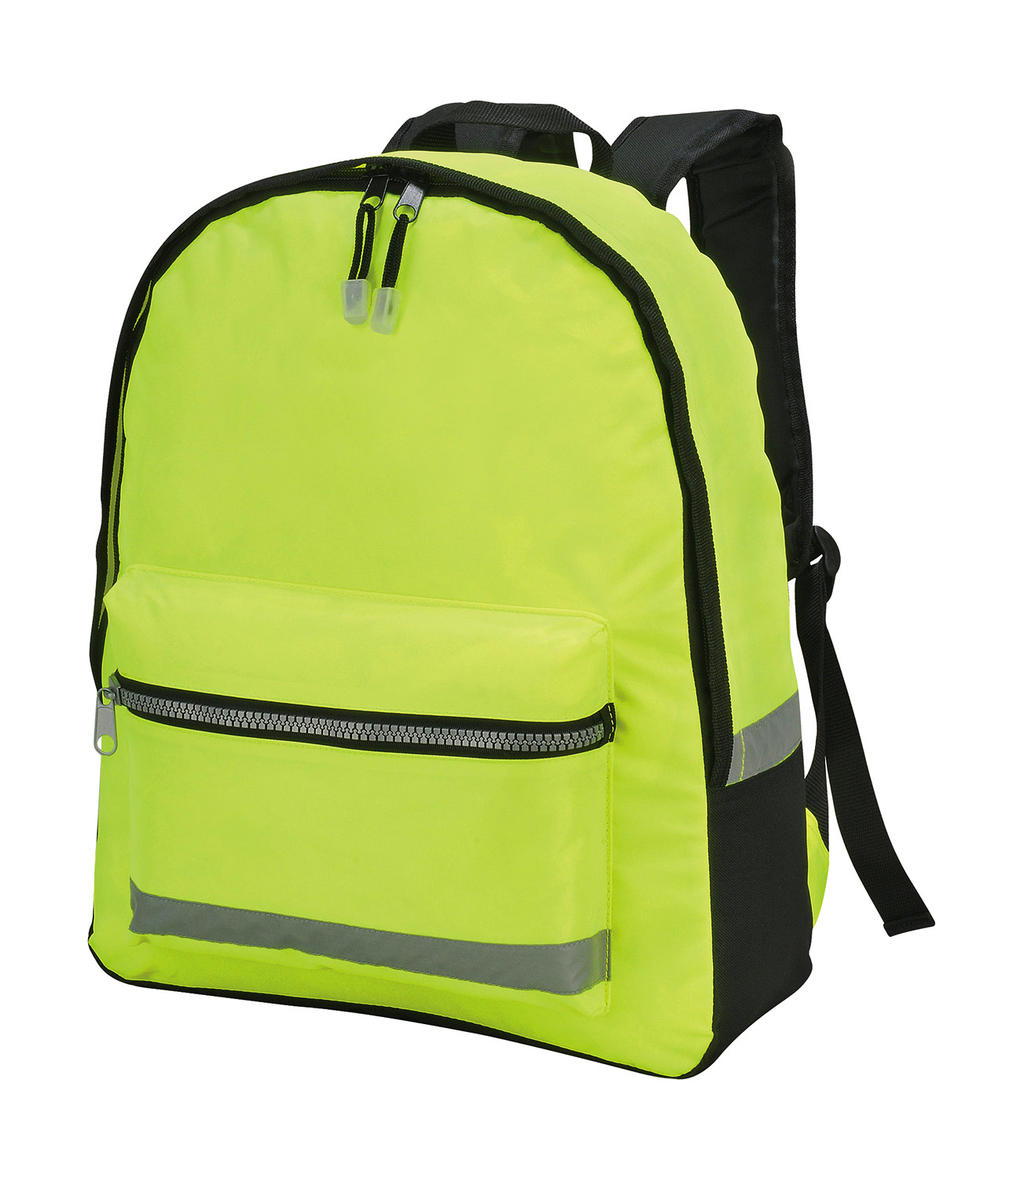  Gatwick Hi-Vis Backpack in Farbe Hi-Vis Yellow